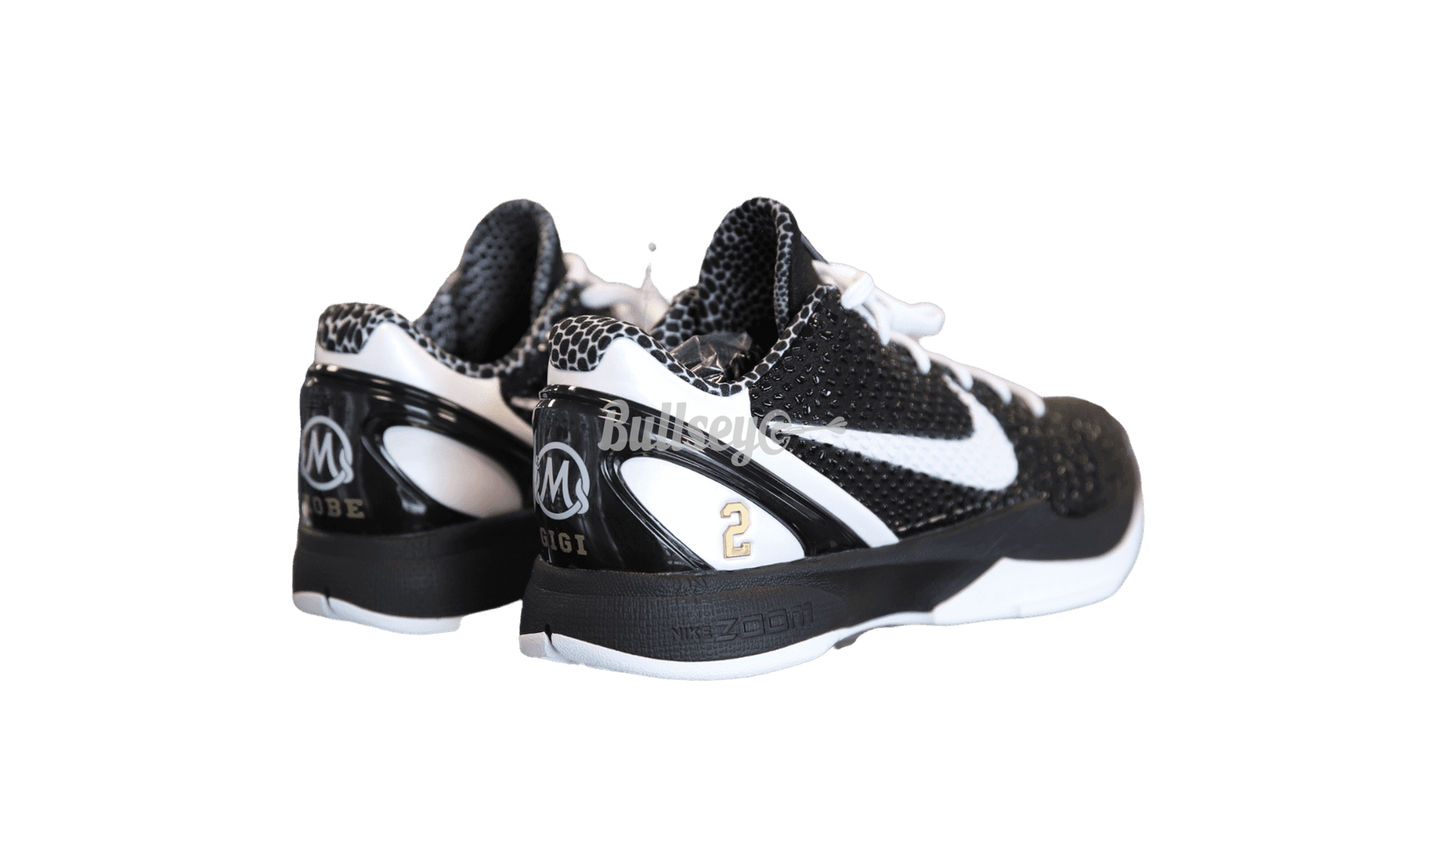 Nike Kobe 6 Proto "Mambacita Sweet 16" (No Box)